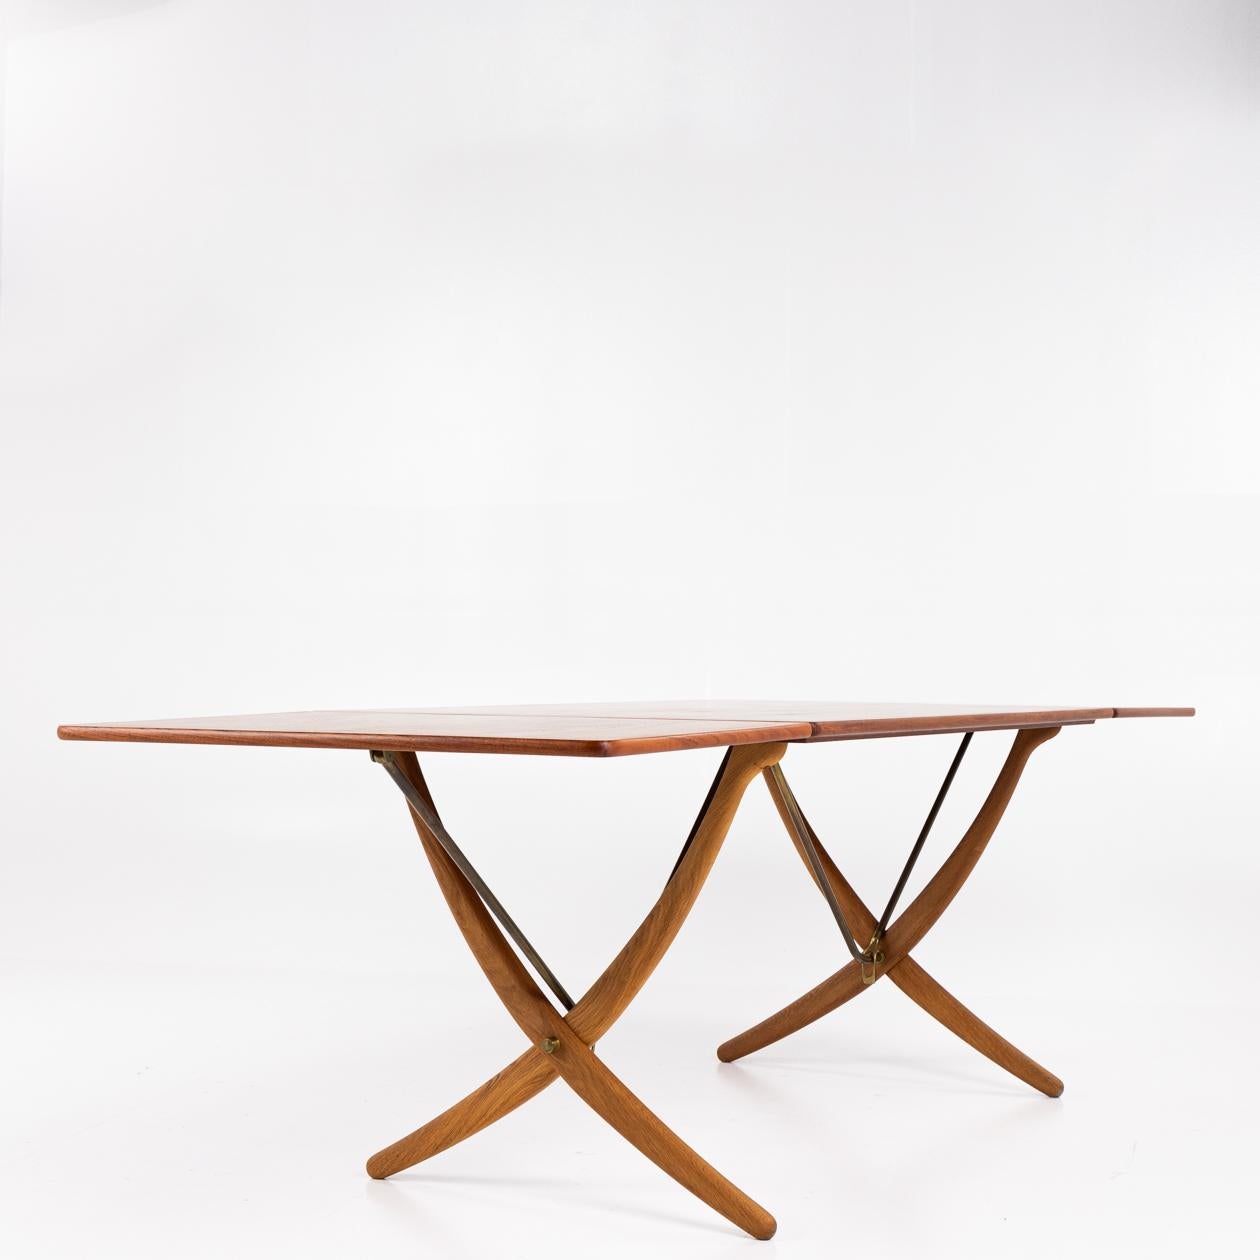 AT 304 - Sabre-legged table by Hans J. Wegner 3